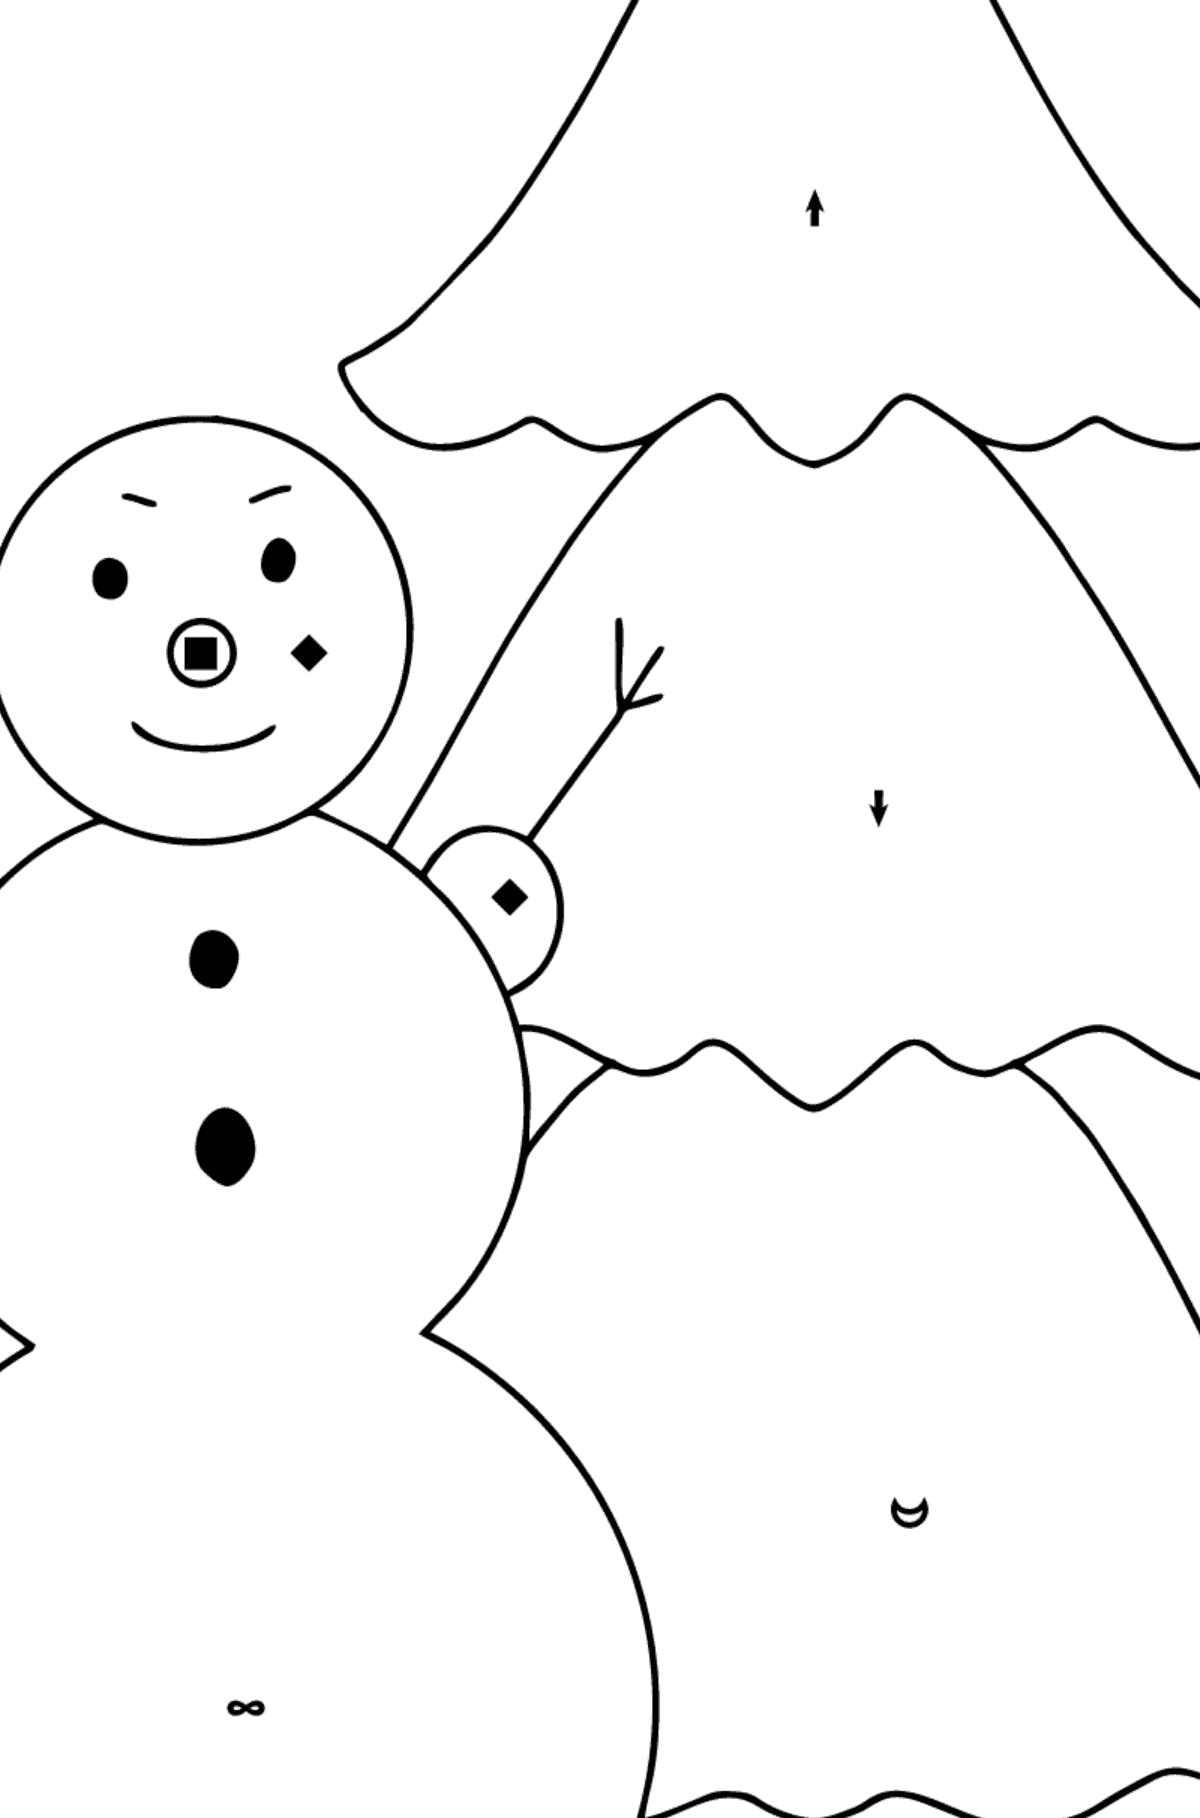 Omalovánka sněhulák a strom - Omalovánka podle Symbolů pro děti